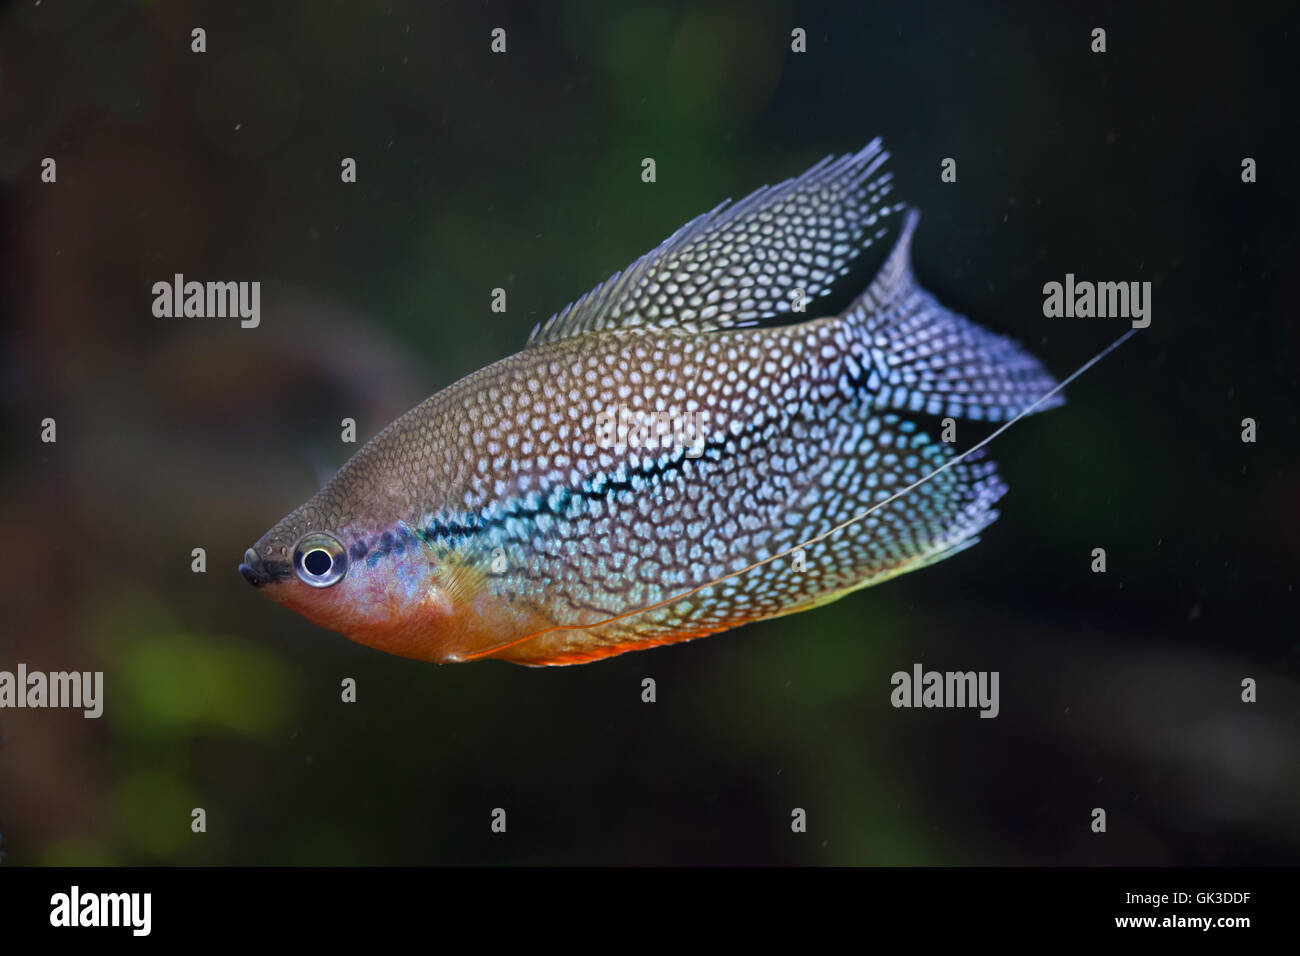 Pearl gourami (Trichopodus leerii), also known as the mosaic gourami. Wildlife animal. Stock Photo